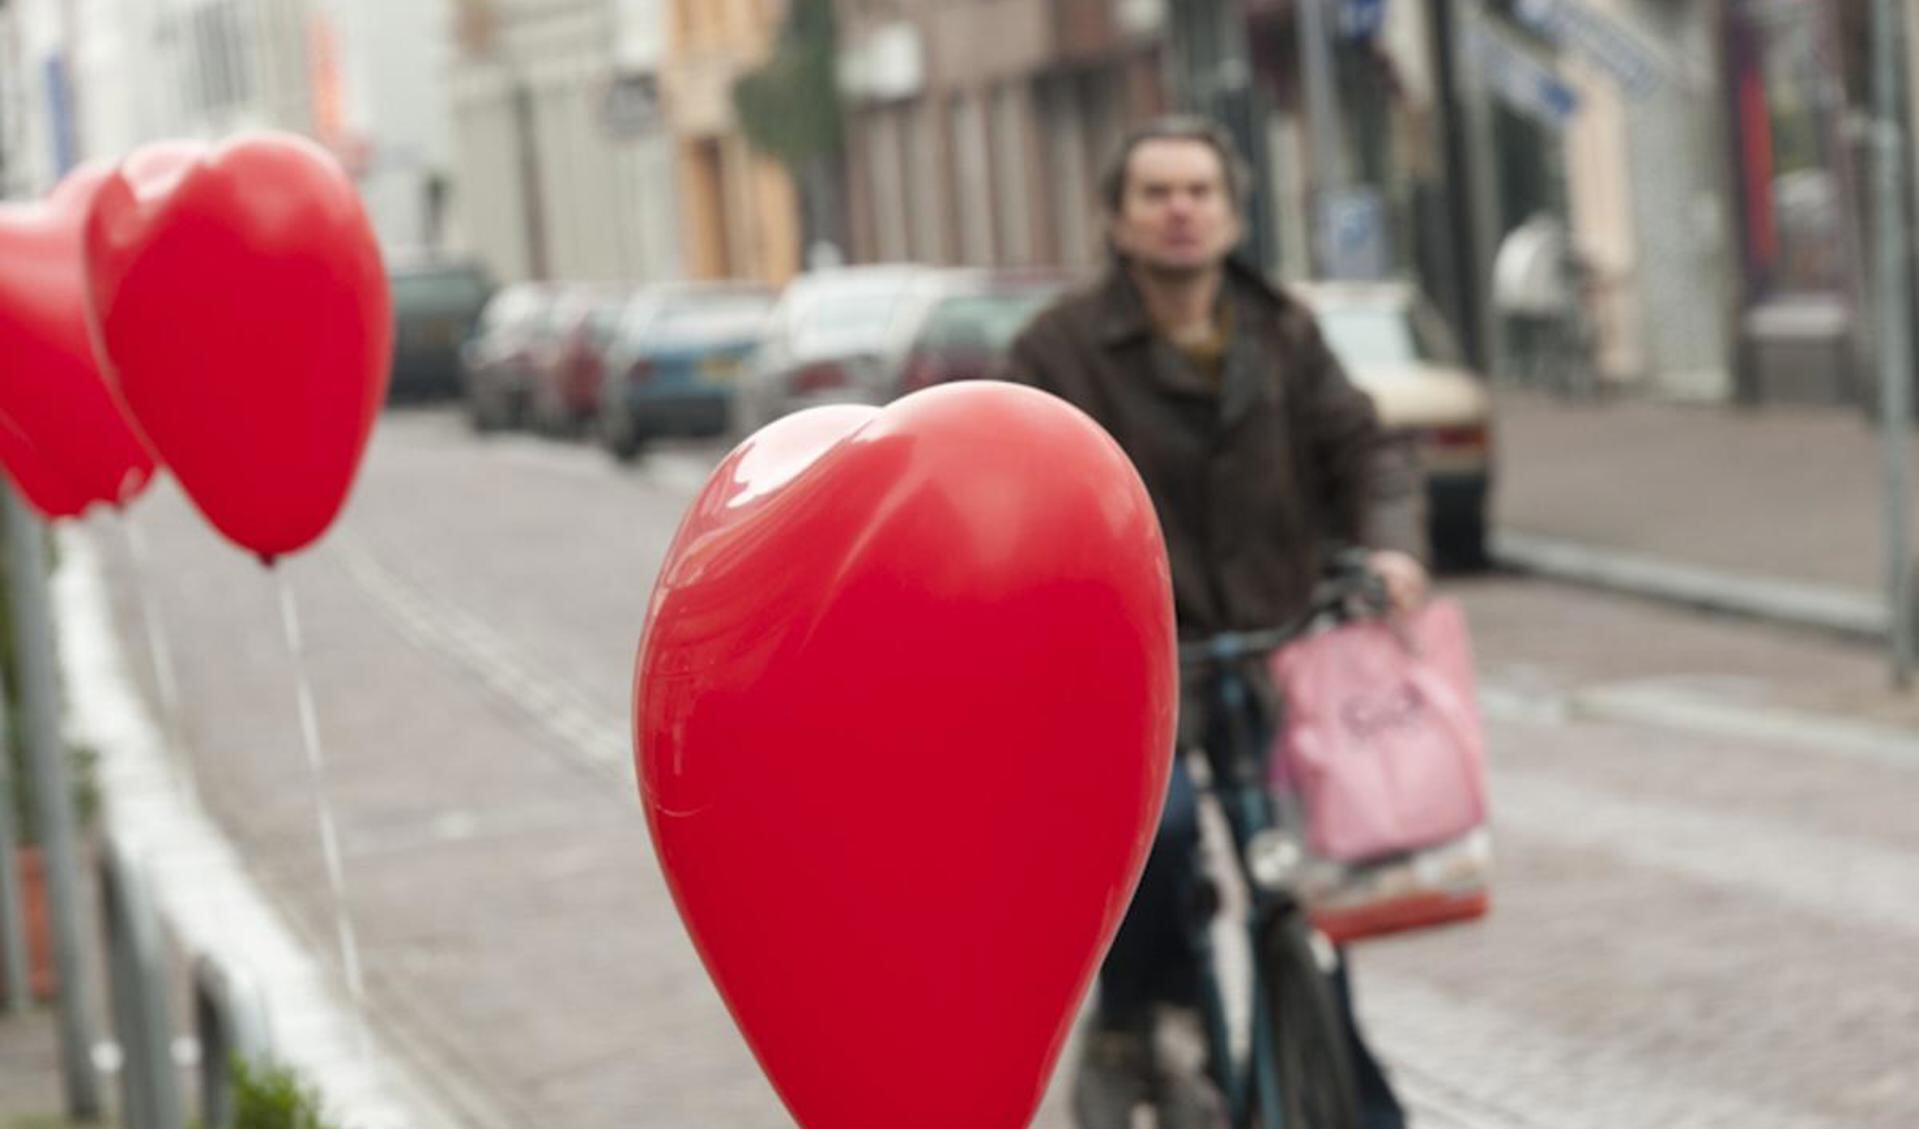 Valentijnsdag in Breda blijkt vooral voor loefhebbers van zoetigheden. foto Guido van der Kroef